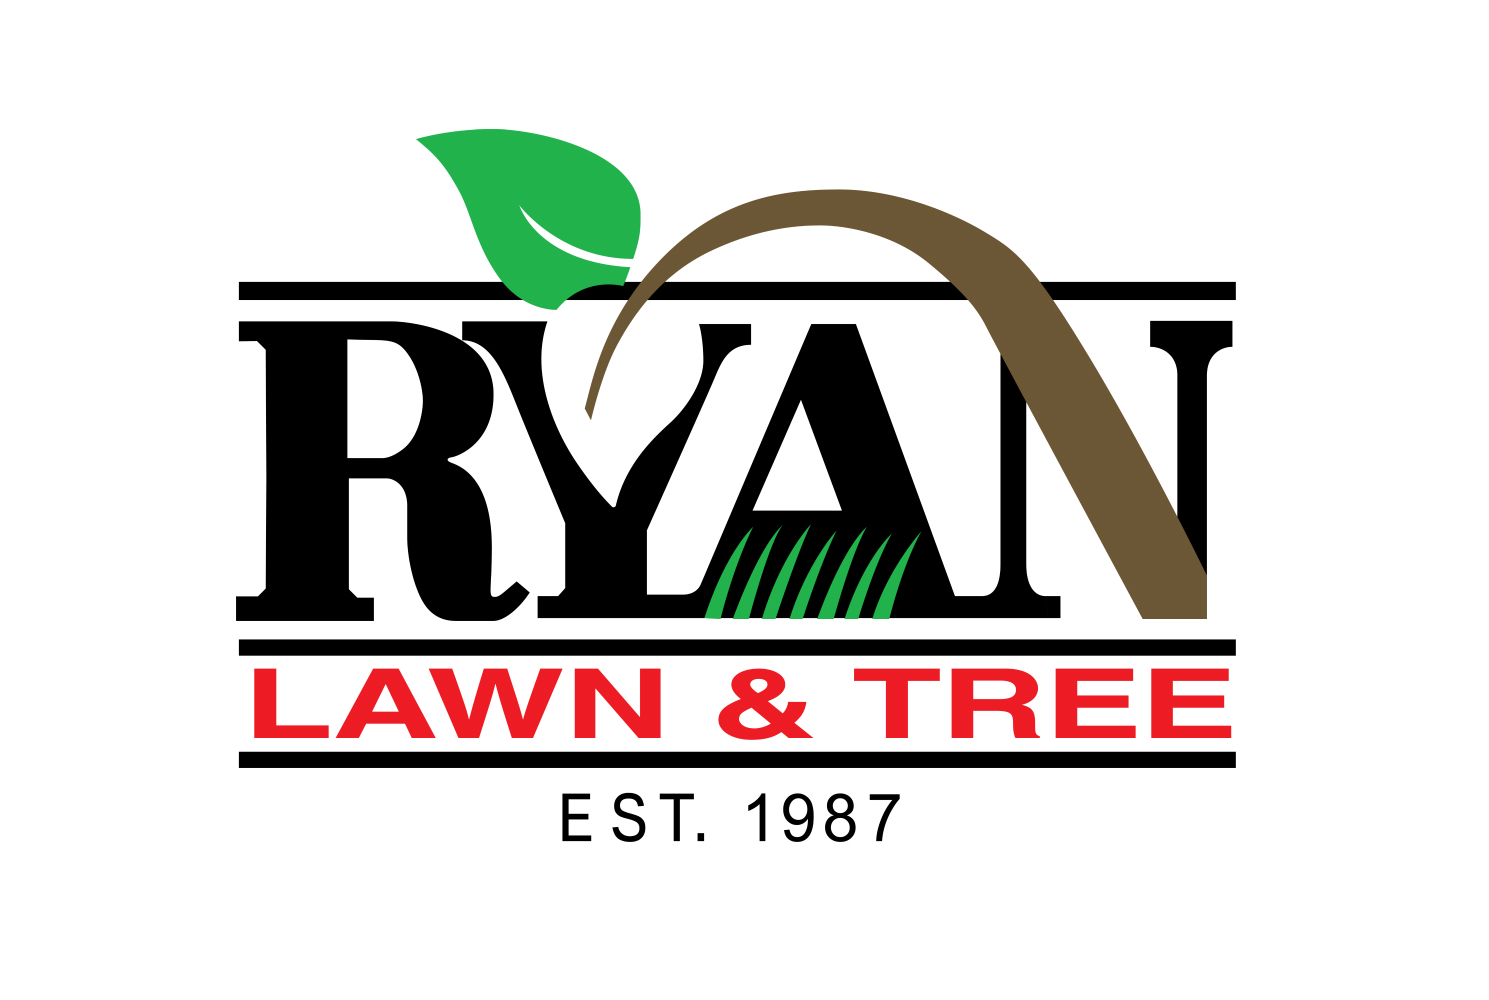 6Ryan Lawn & Tree